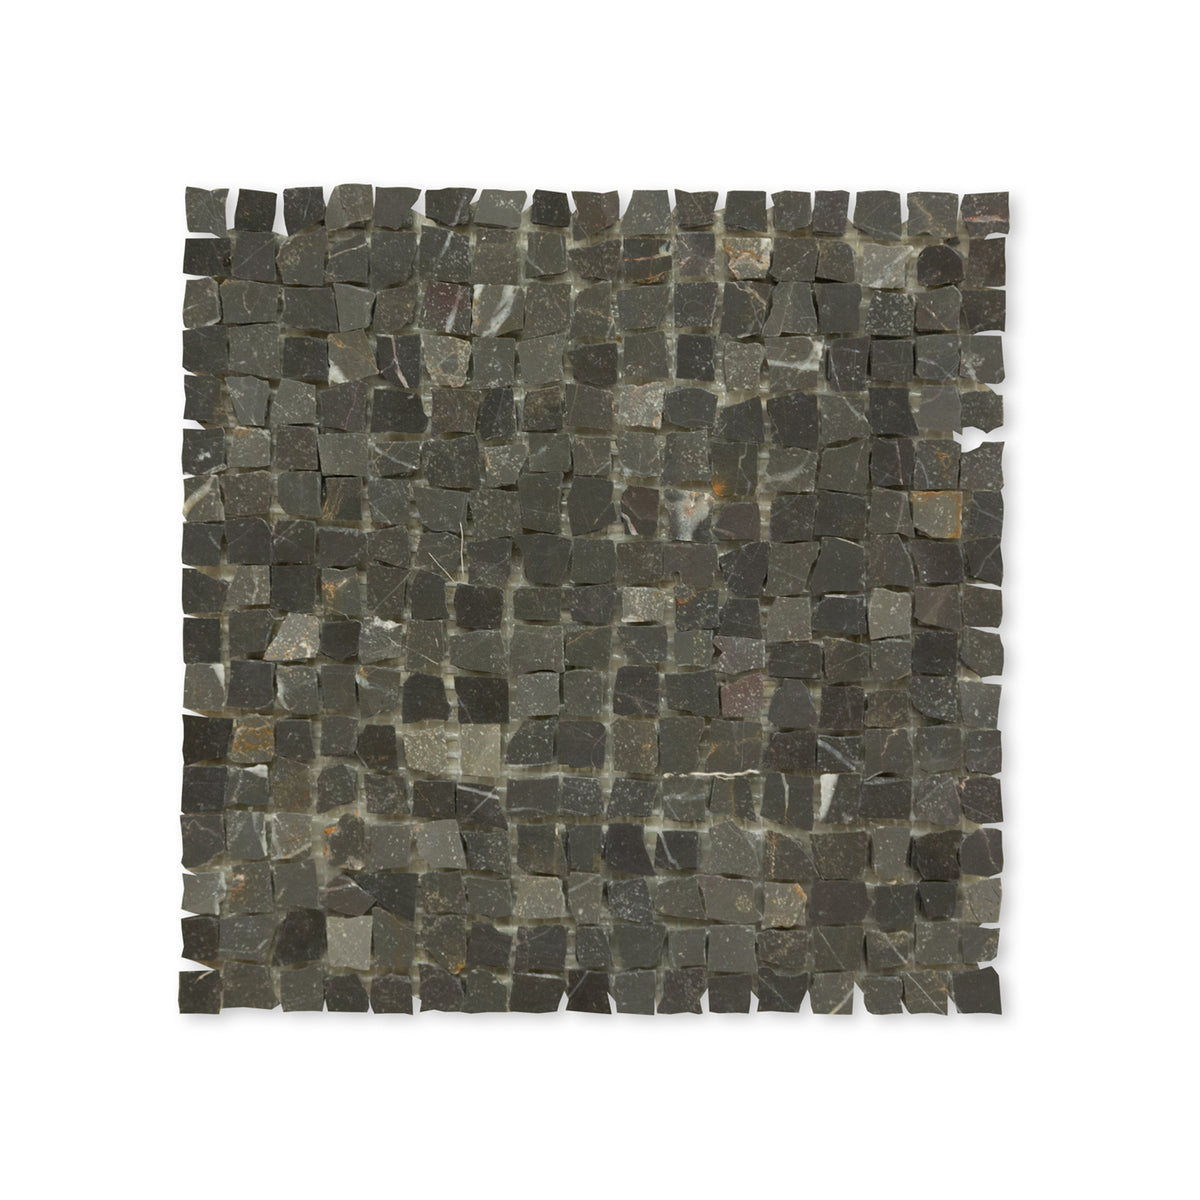 Byzantine Mosaic Fullscreen Image View